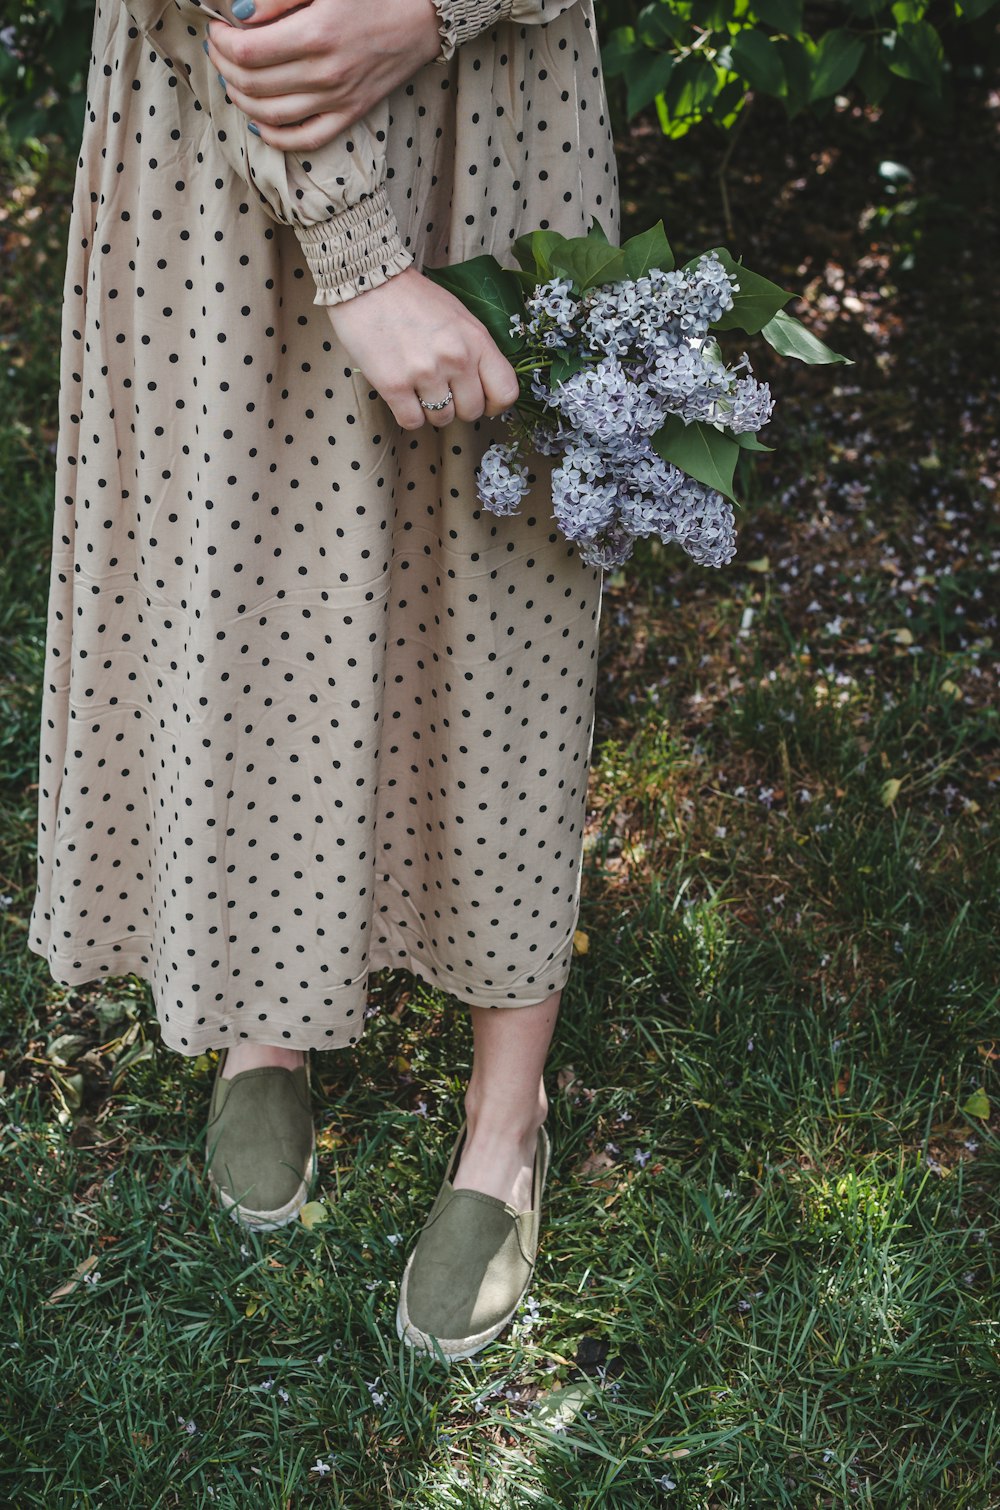 Frau in weiß-schwarzem Polka-Dot-Kleid und weißen Schuhen auf grünem Rasenfeld